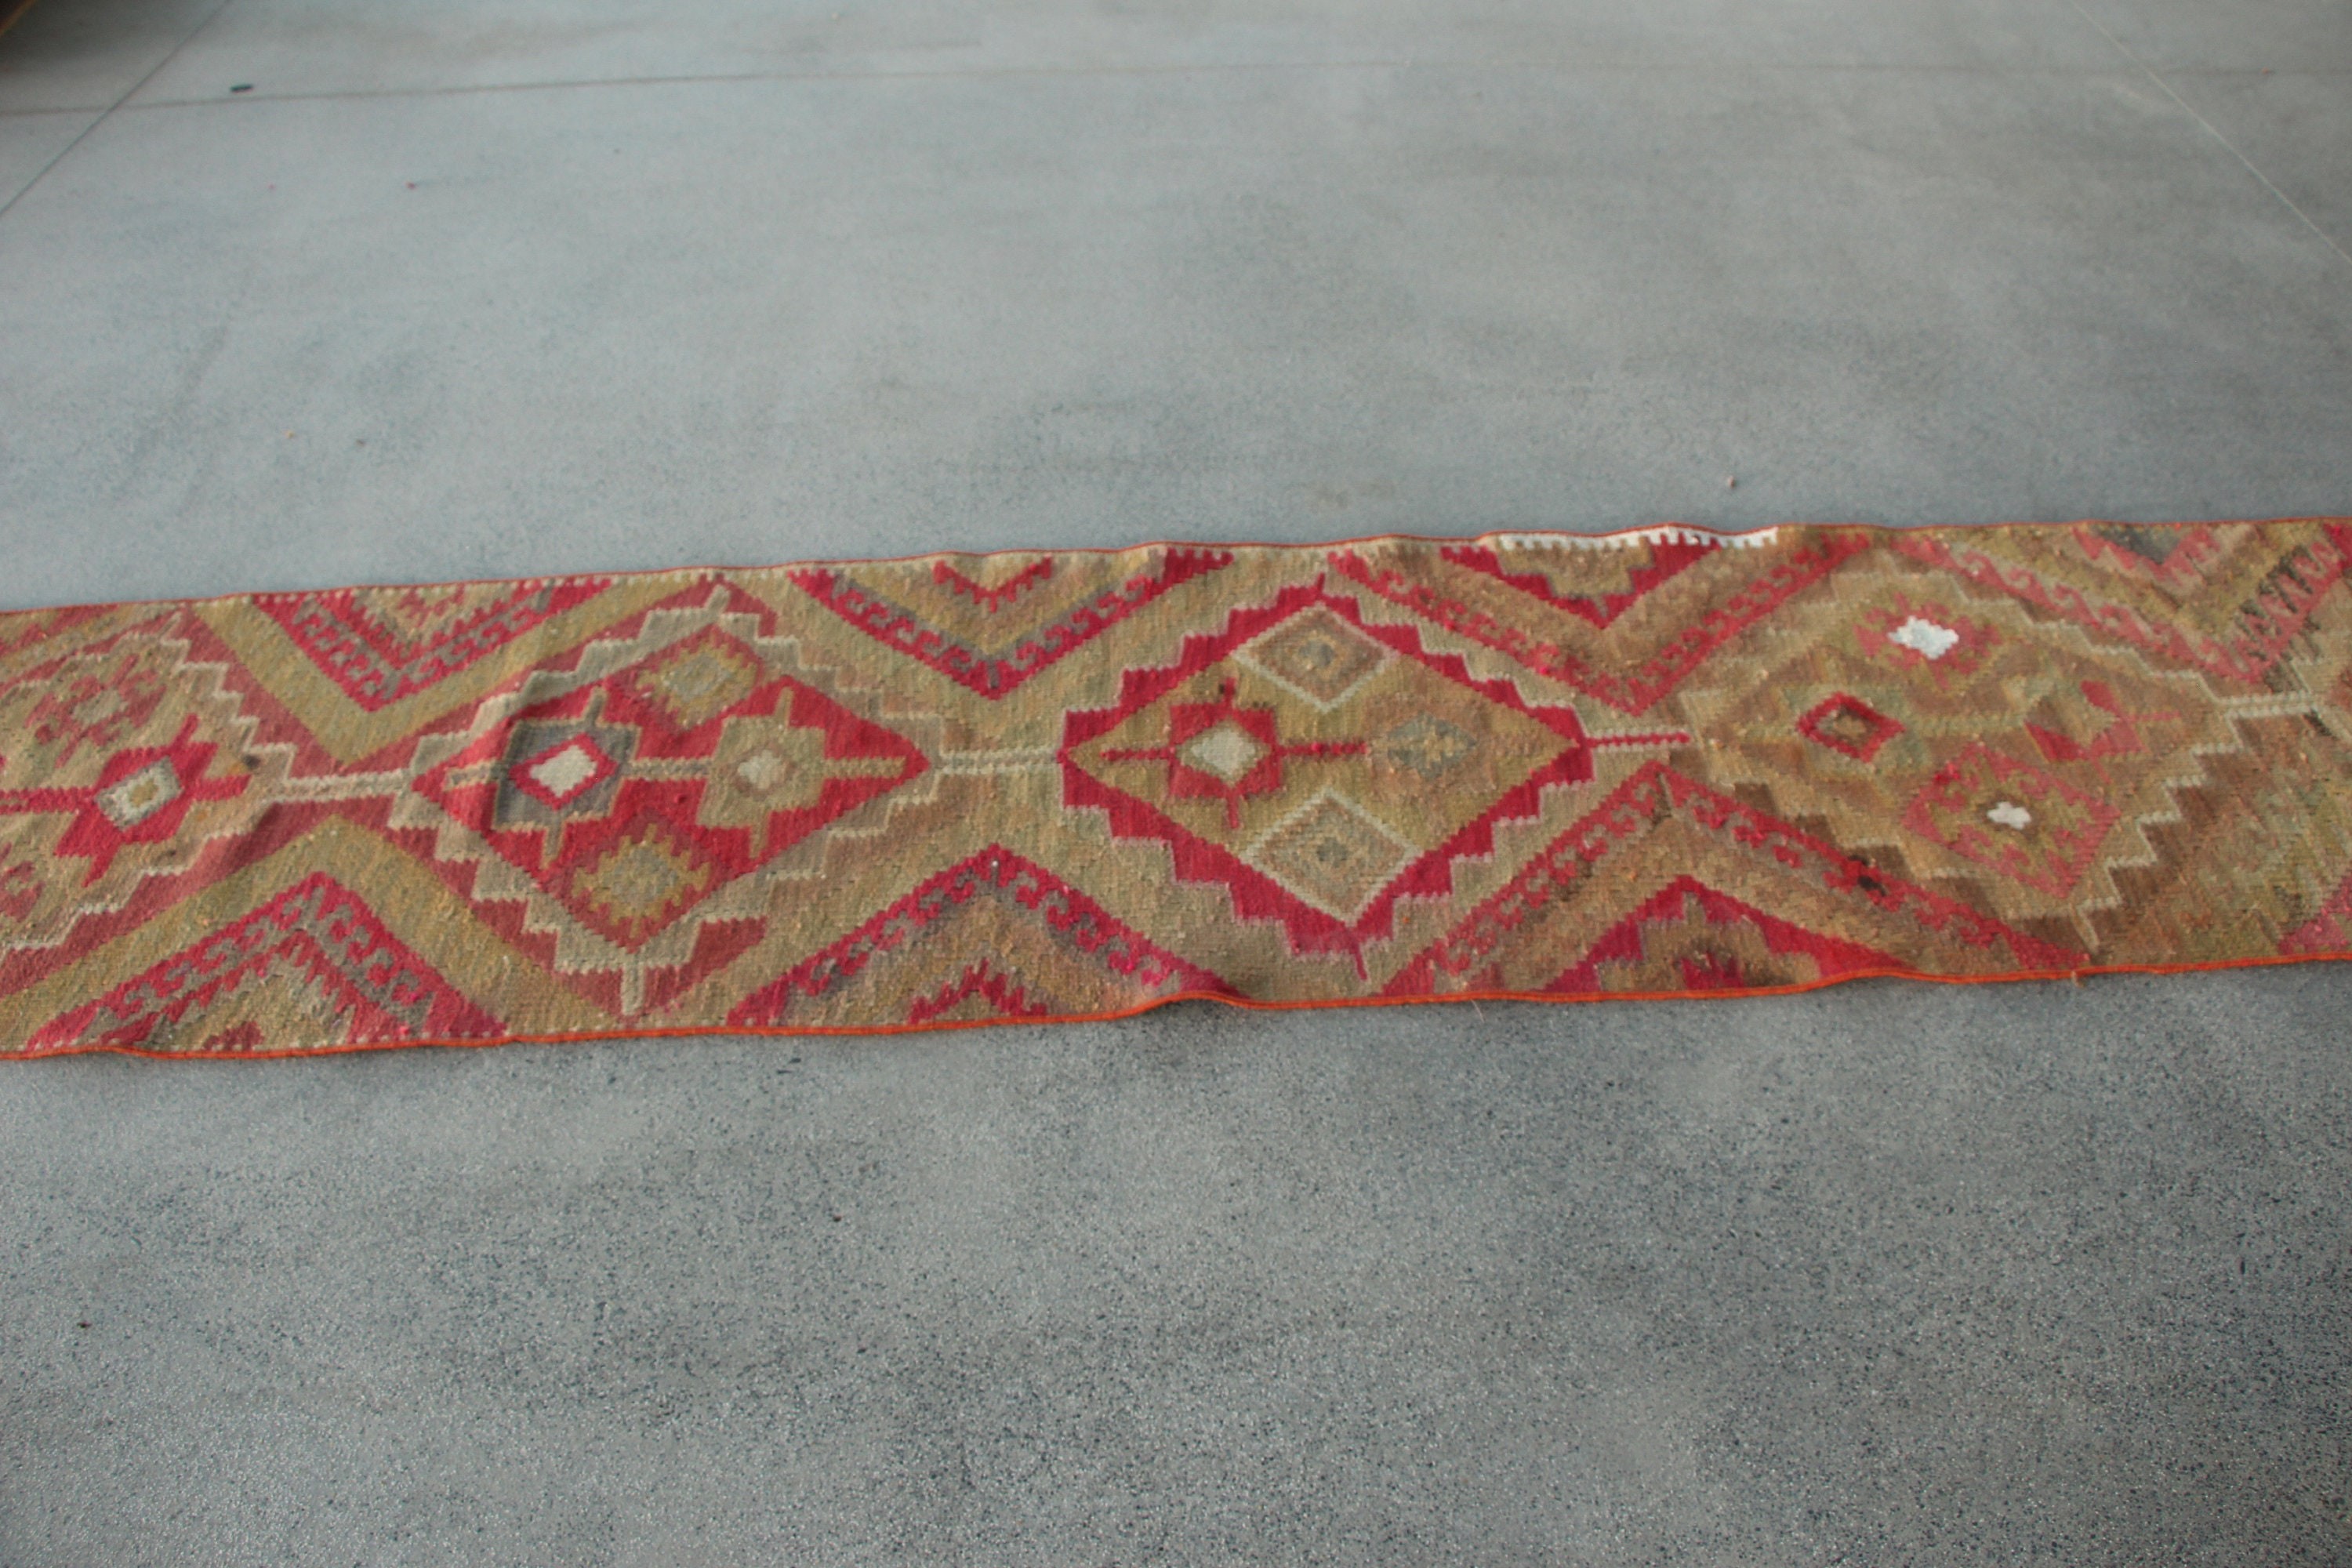 Tribal Rug, Stair Rug, Kitchen Rugs, Pink Wool Rugs, Floor Rugs, Kilim, Turkish Rugs, Vintage Rug, Rugs for Stair, 2.4x10 ft Runner Rug